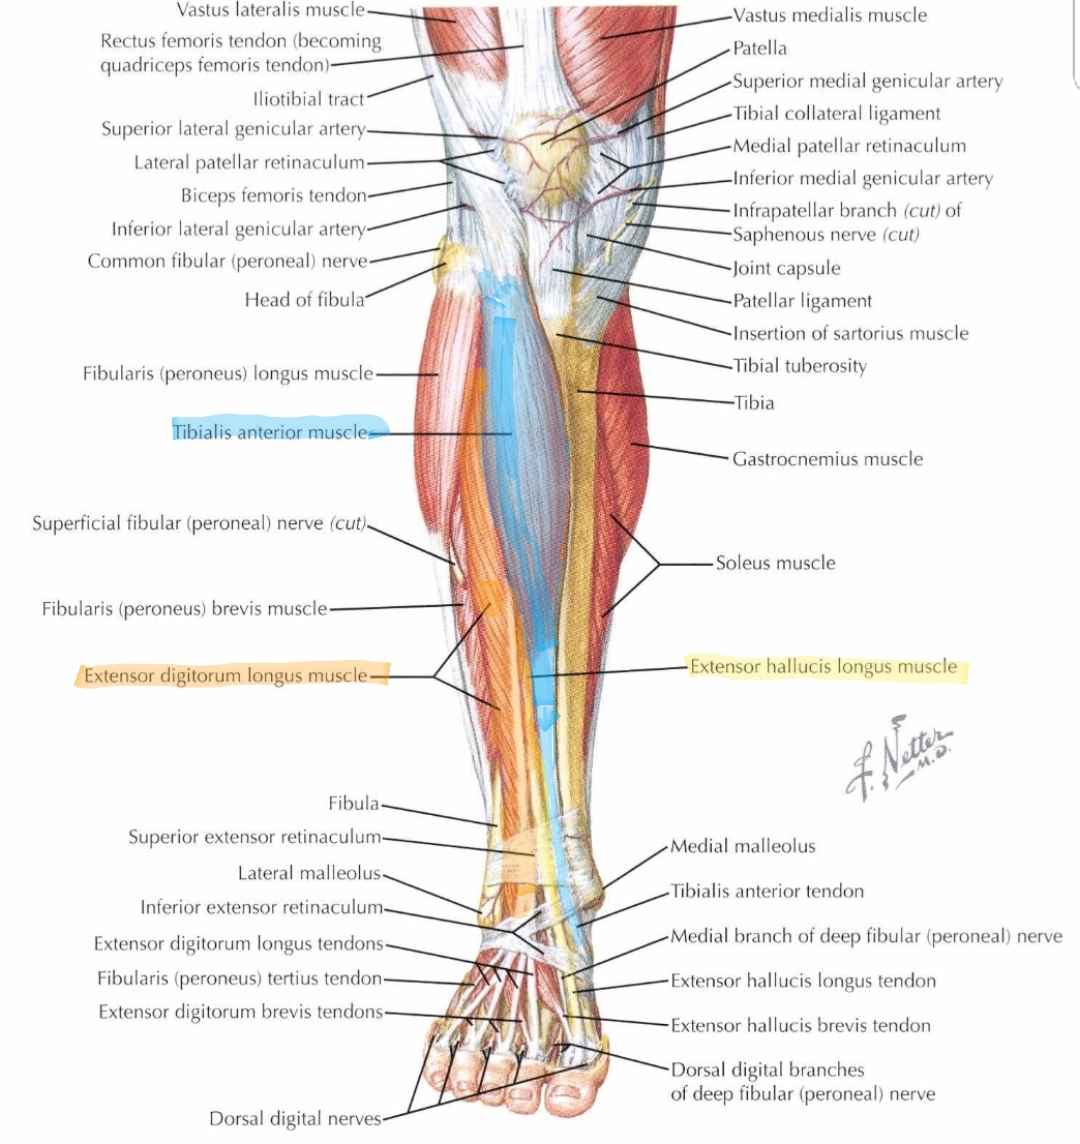 Anterior posterior compartments of leg - lessukraine